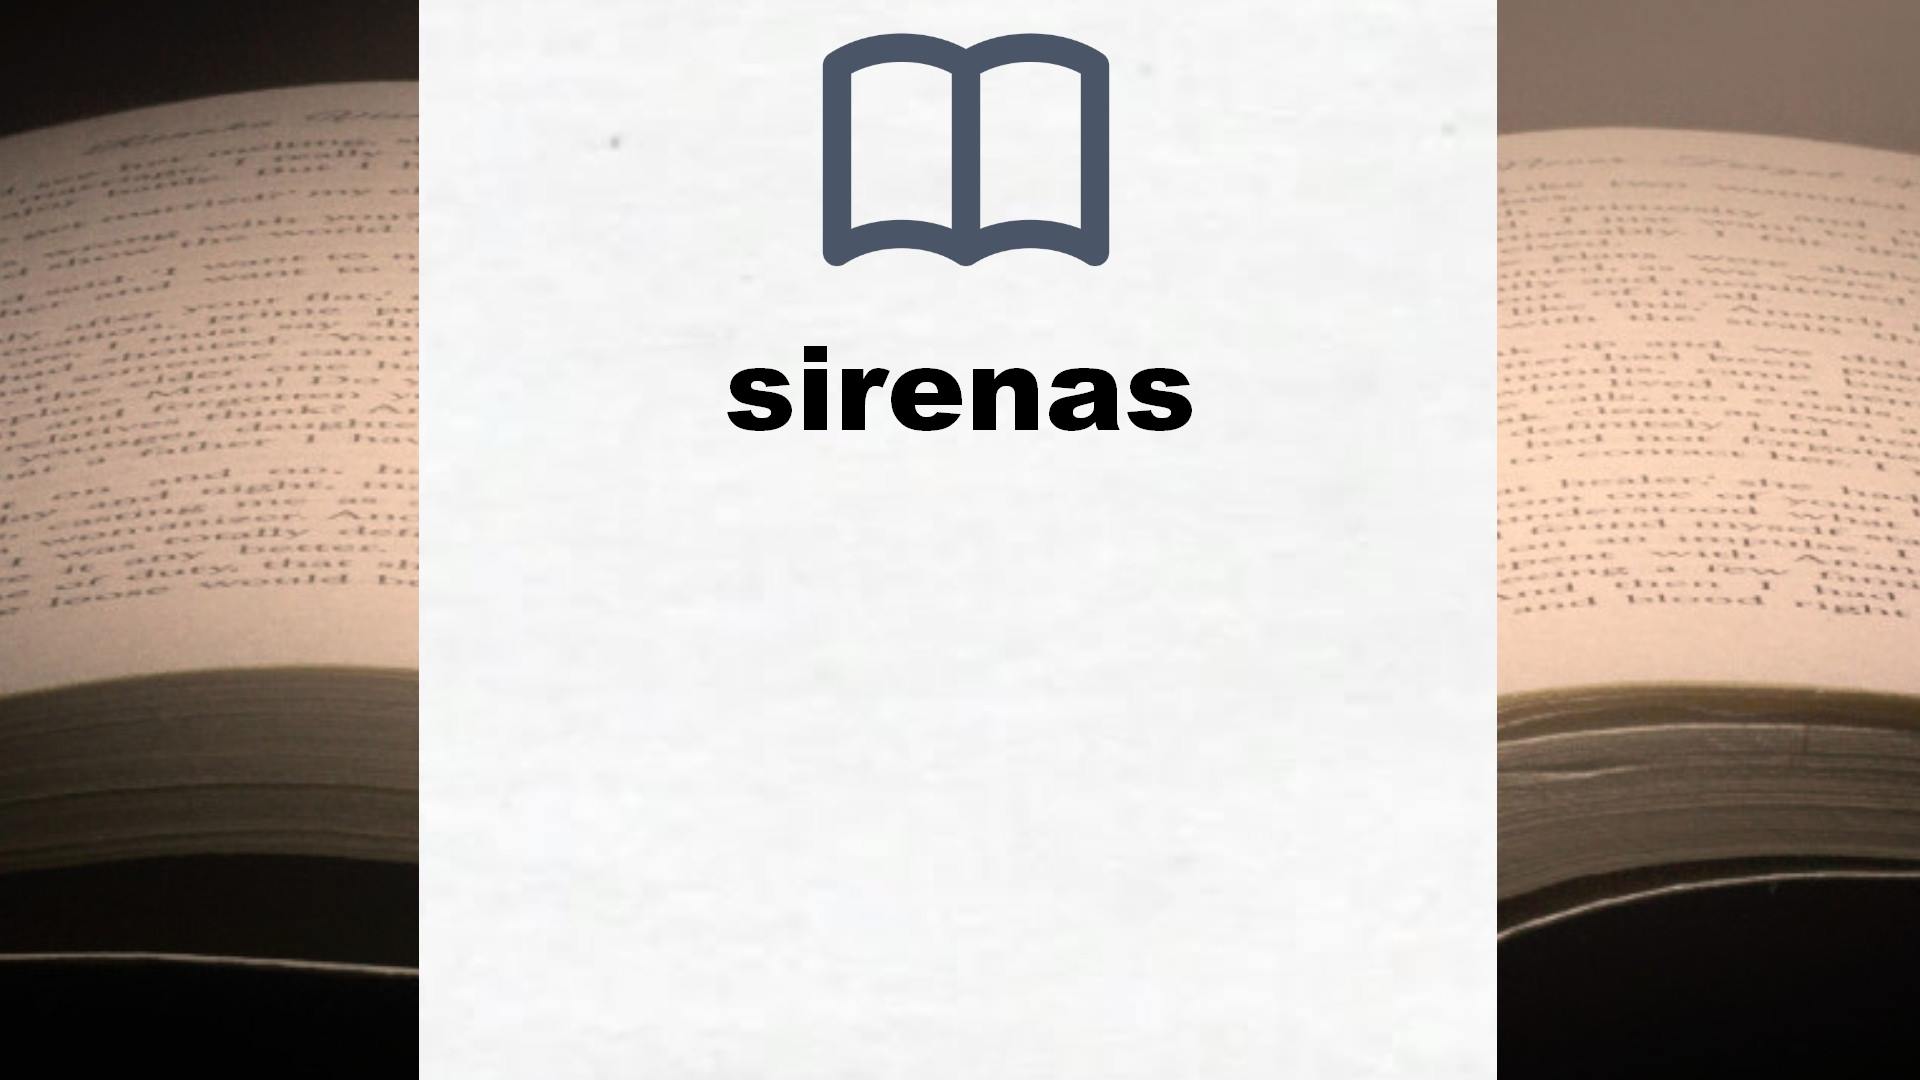 Libros sobre sirenas